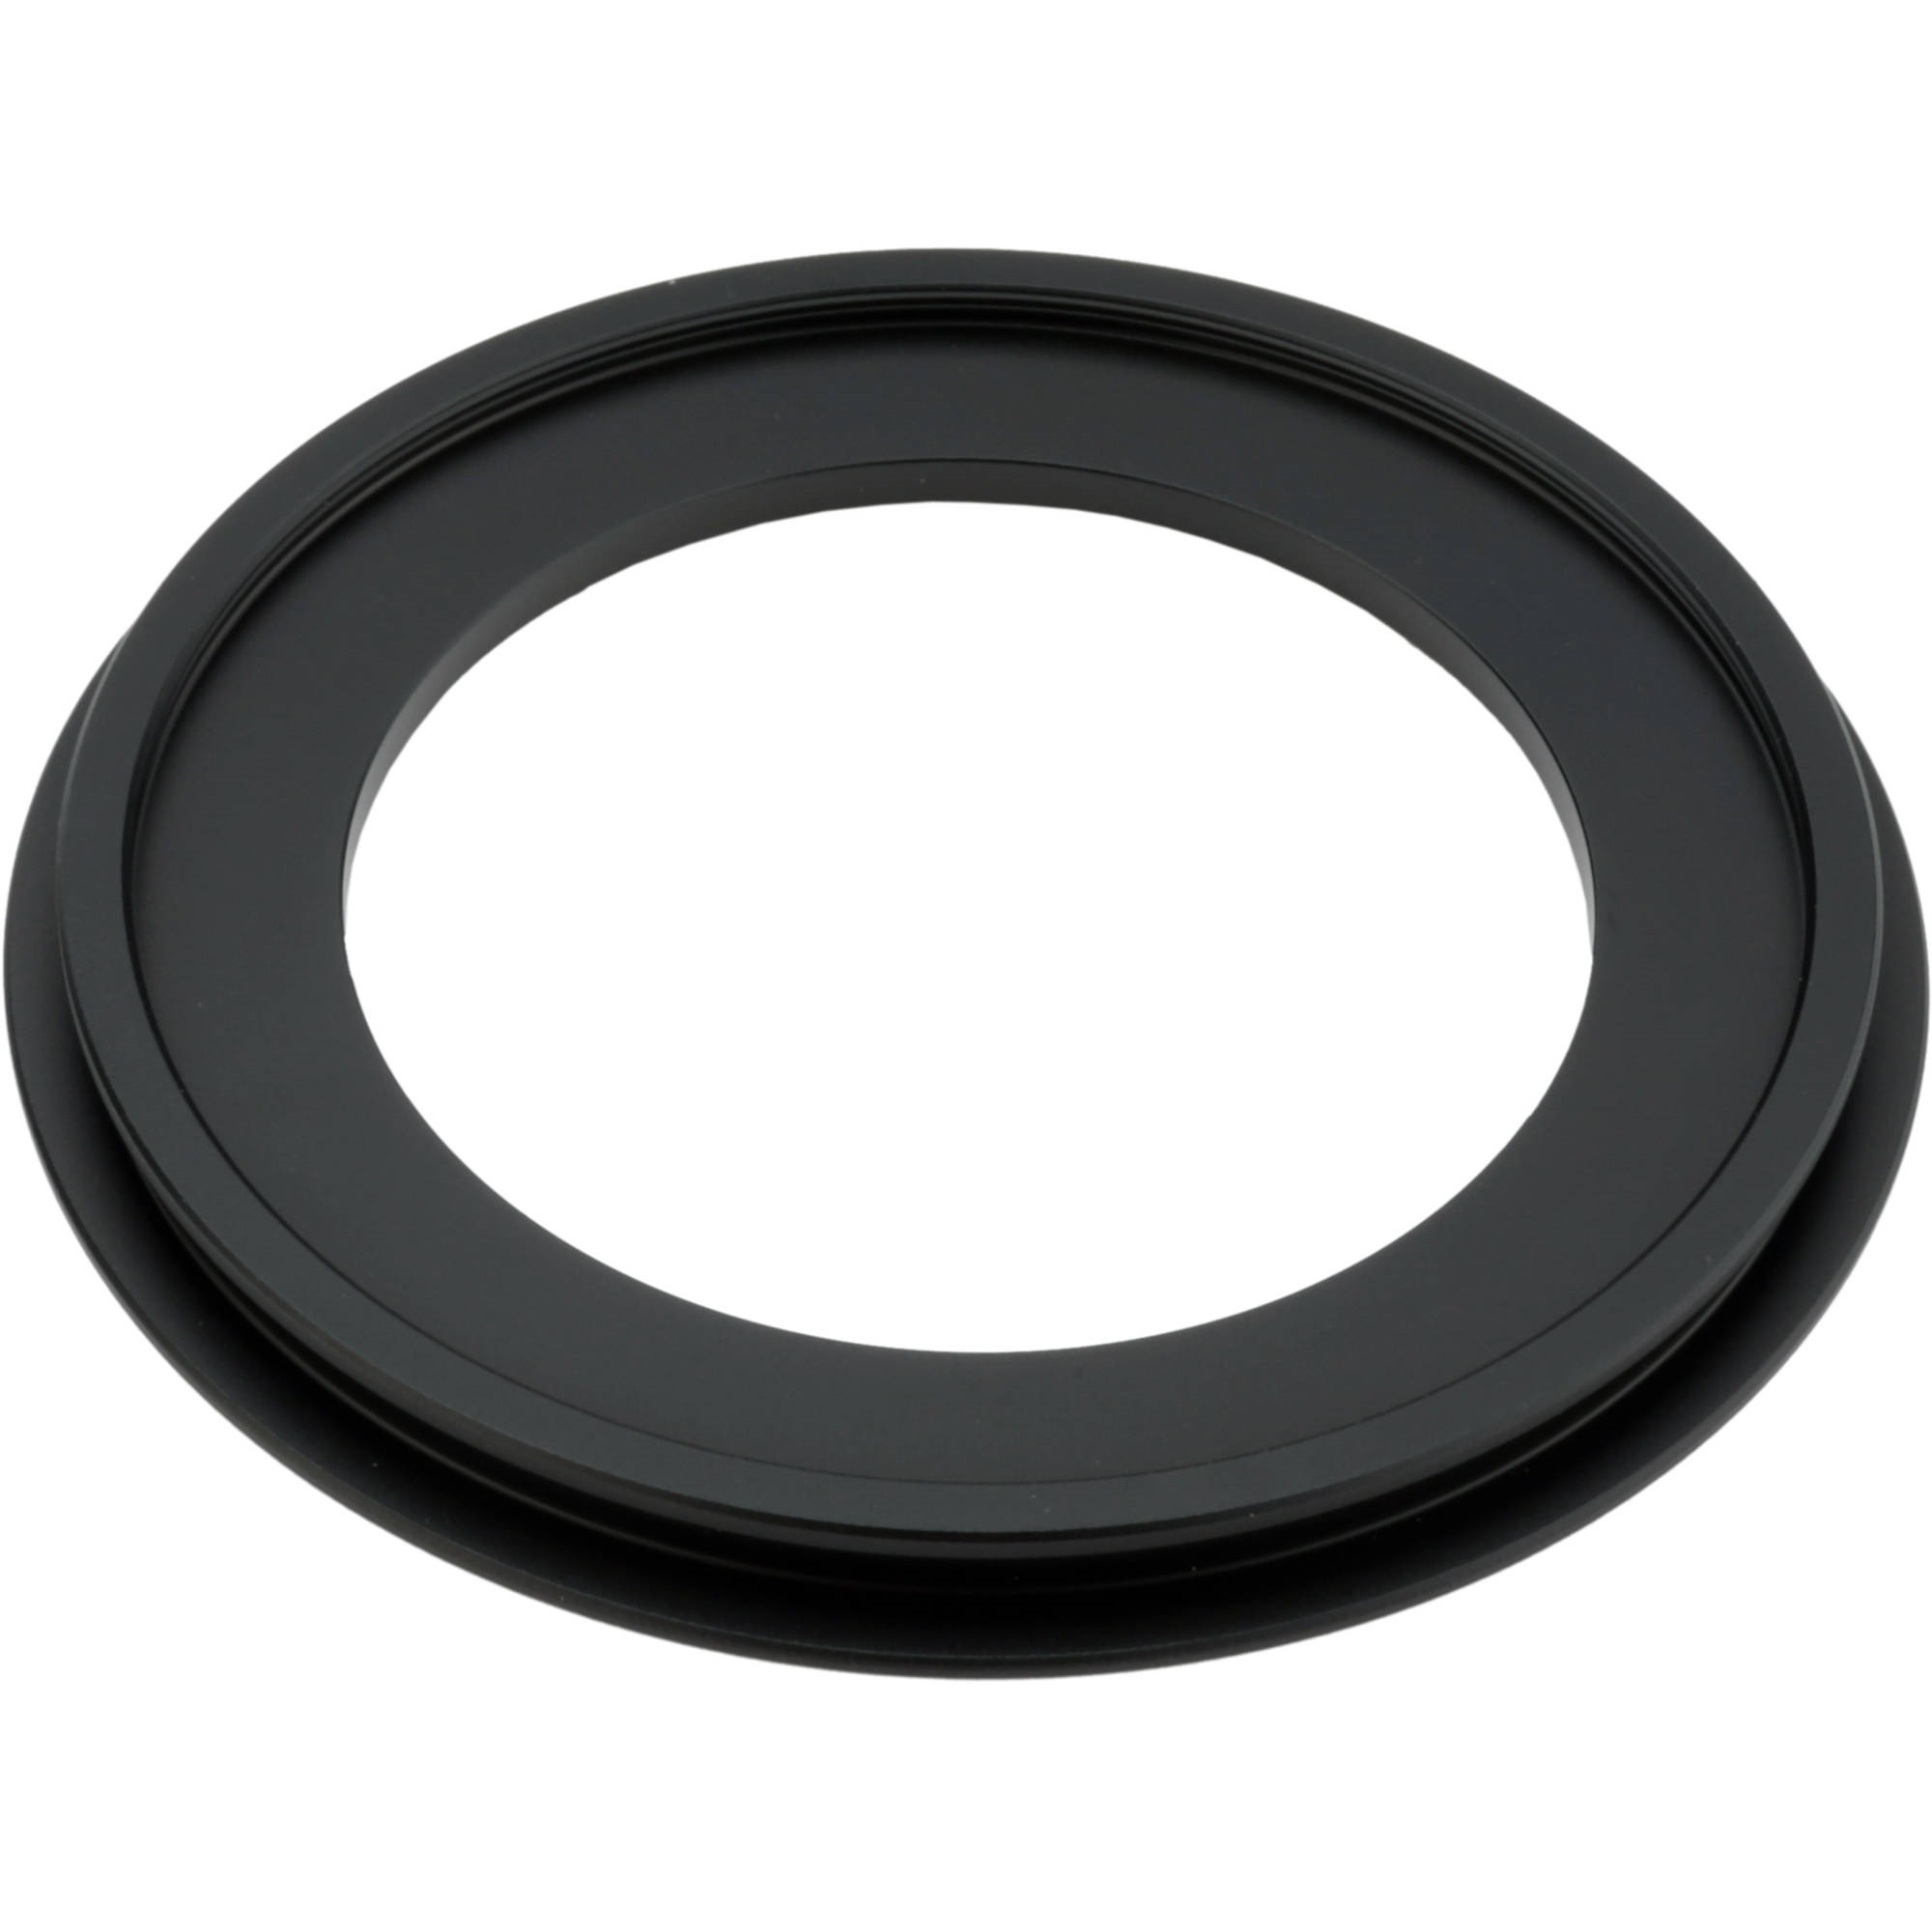 Sensei Pro 67mm Adapter Ring for 100mm Aluminum Universal Filter Holder